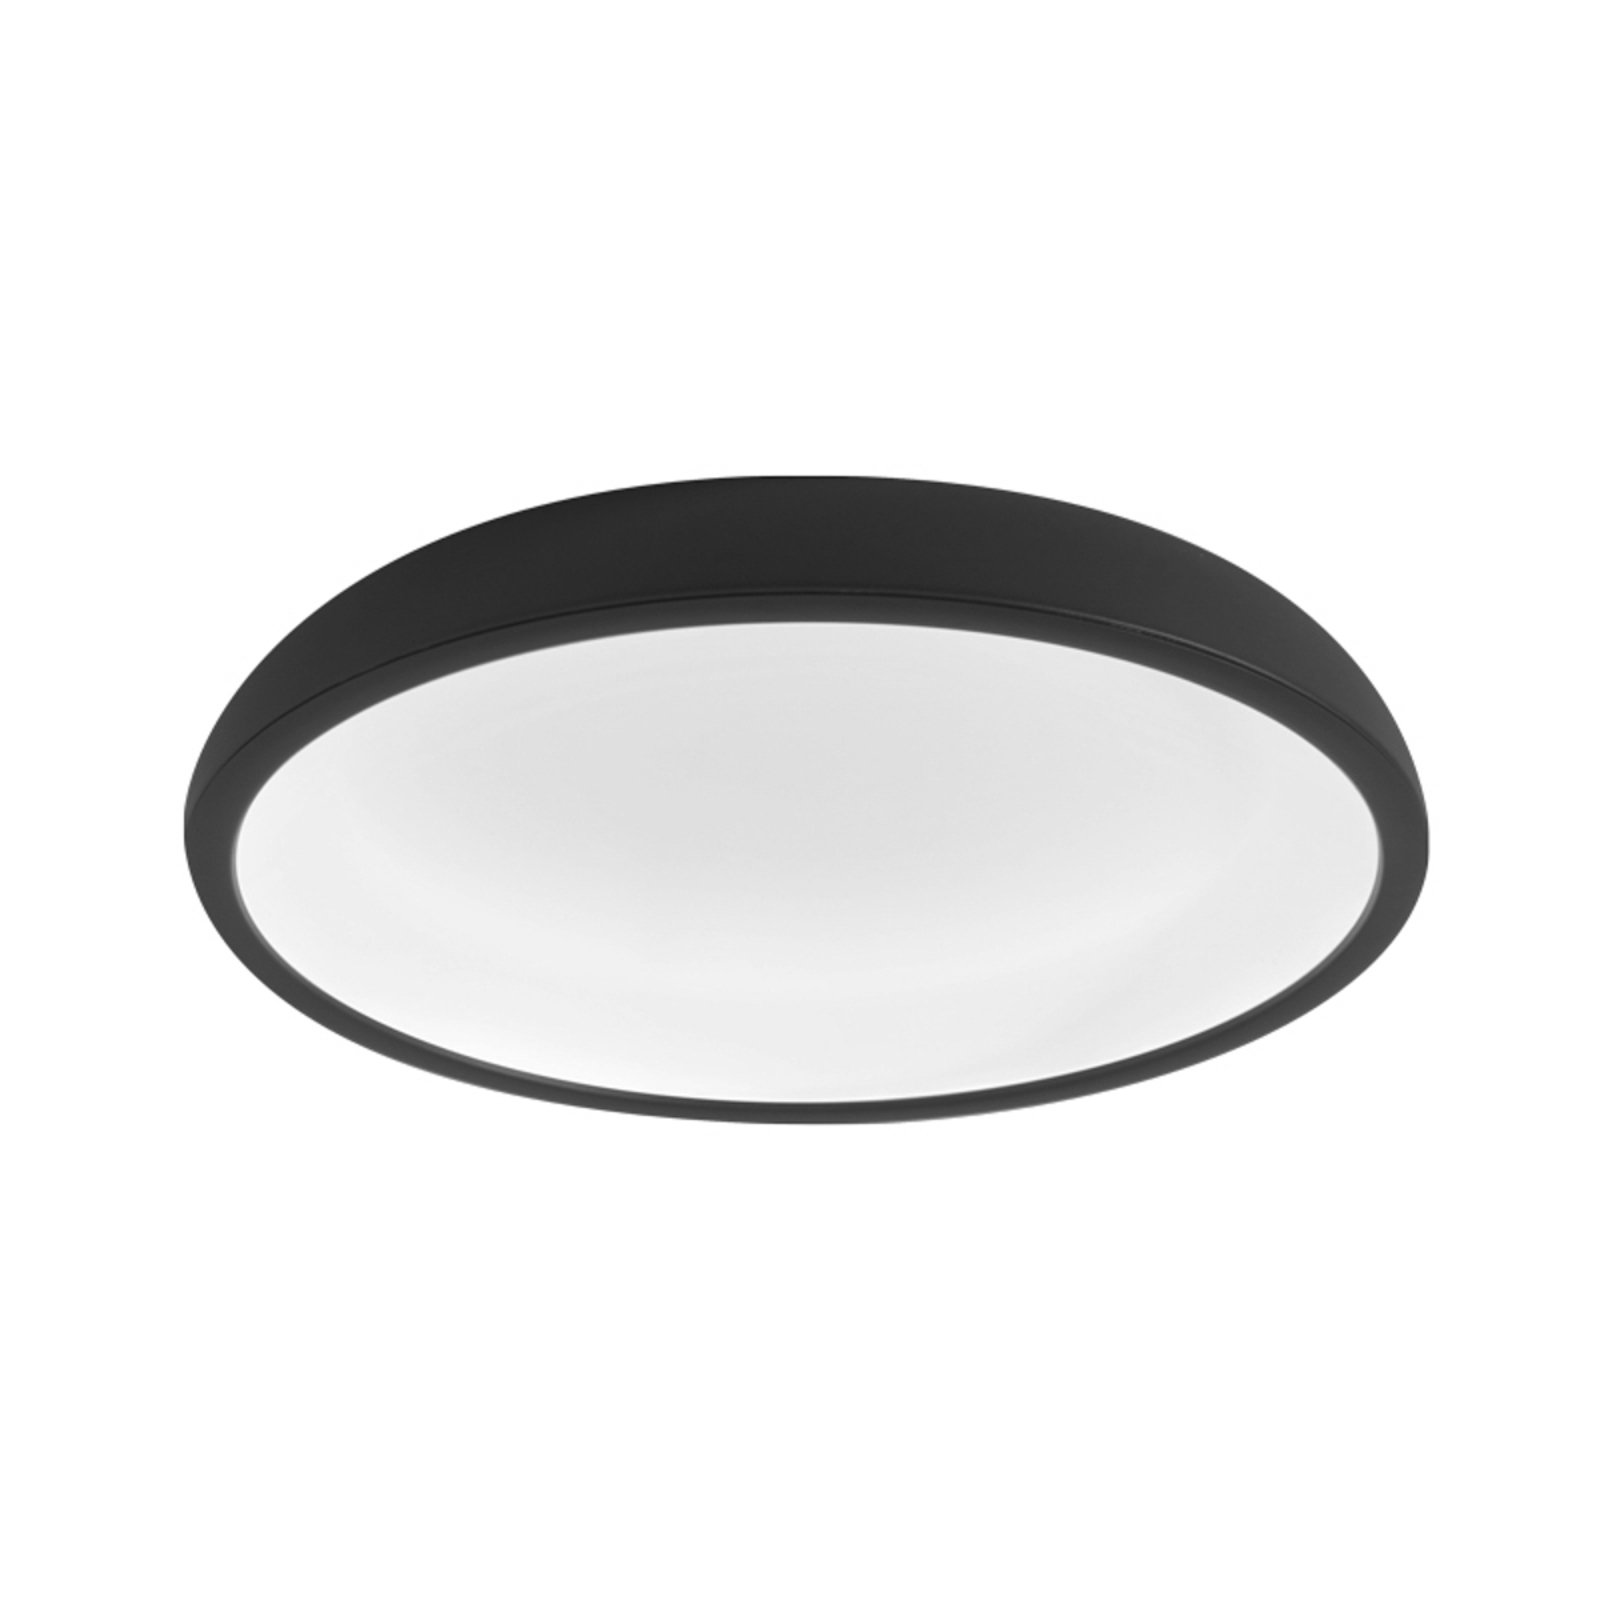 Stilnovo Reflexio LED plafondlamp, Ø65cm zwart